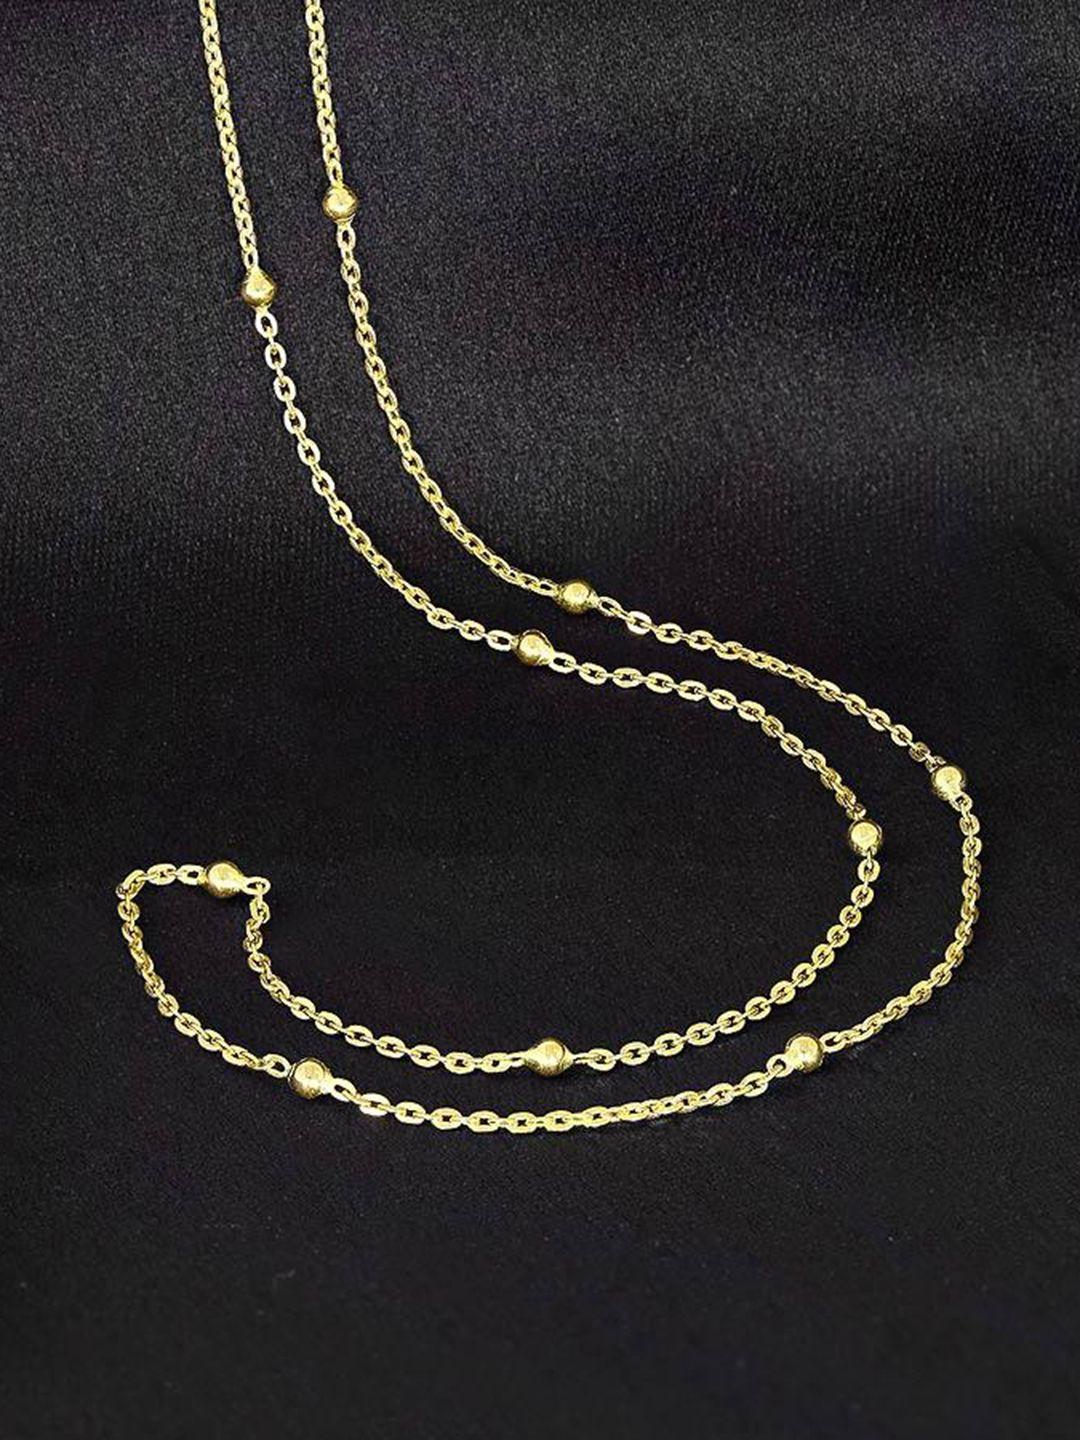 candere a kalyan jewellers company lightweight 22kt bis hallmark gold chain-3.79gm